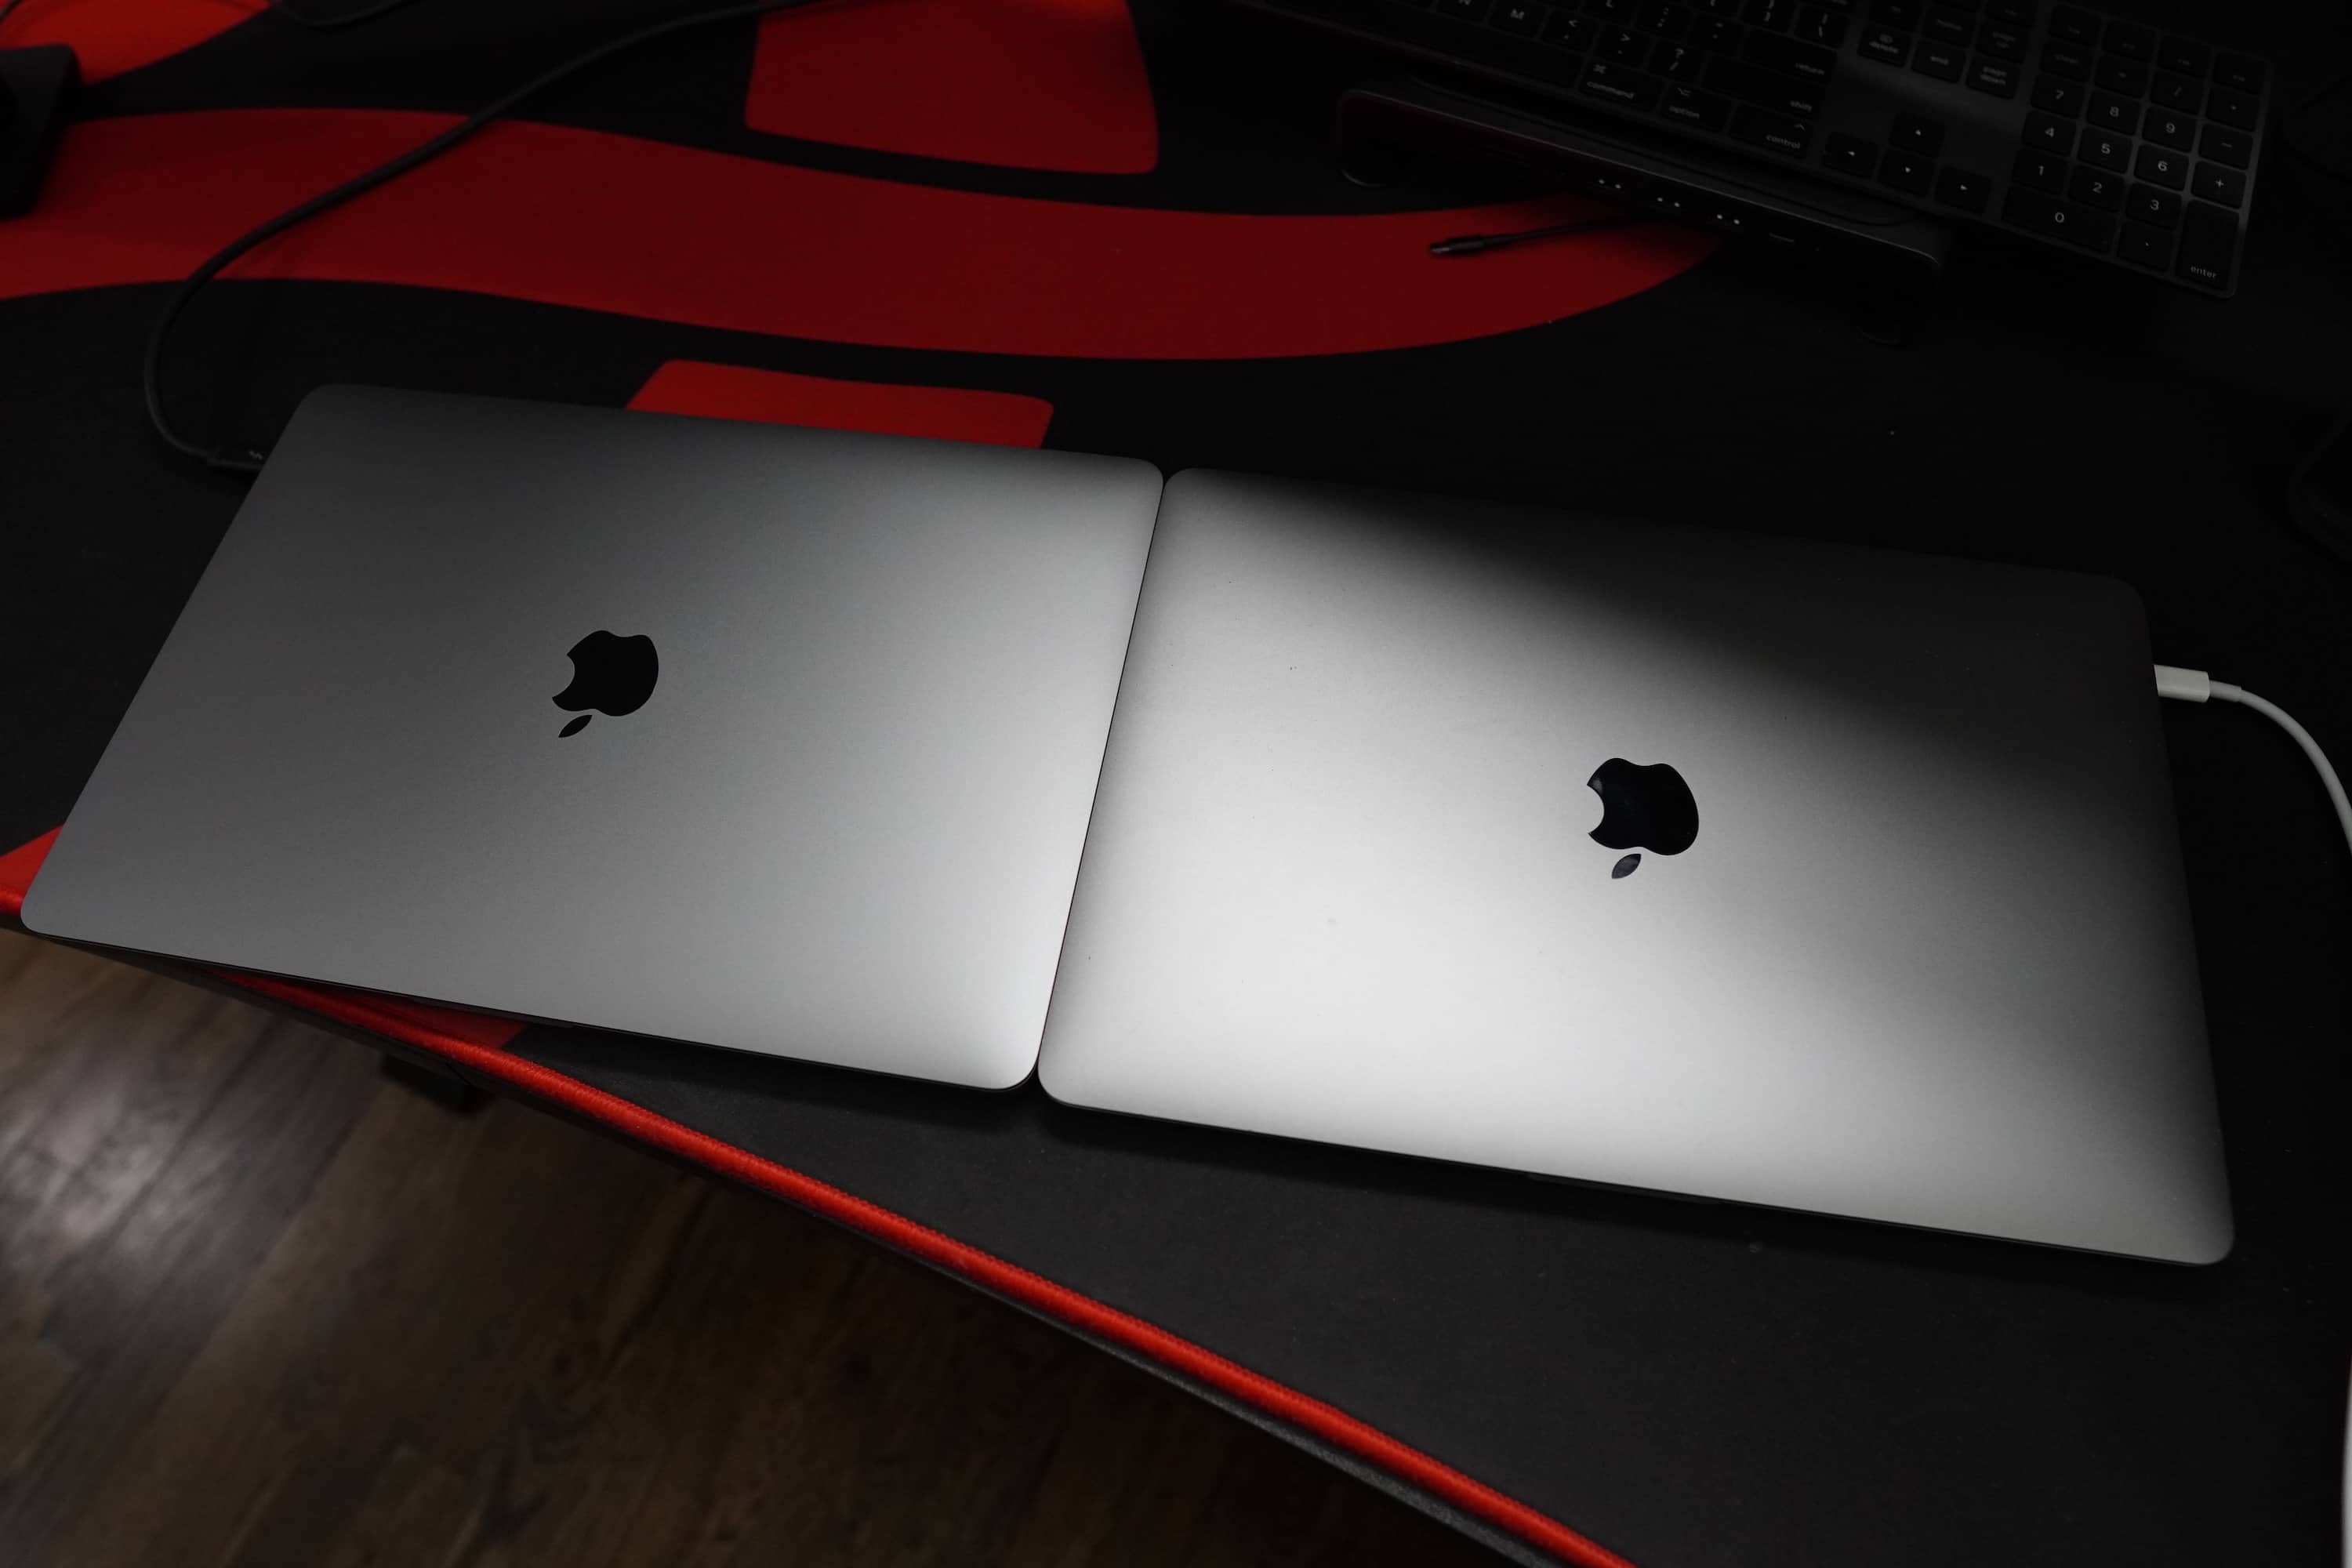 MacBook Pro nhìn chung rất khó phân biệt các thế hệ máy từ bên ngoài